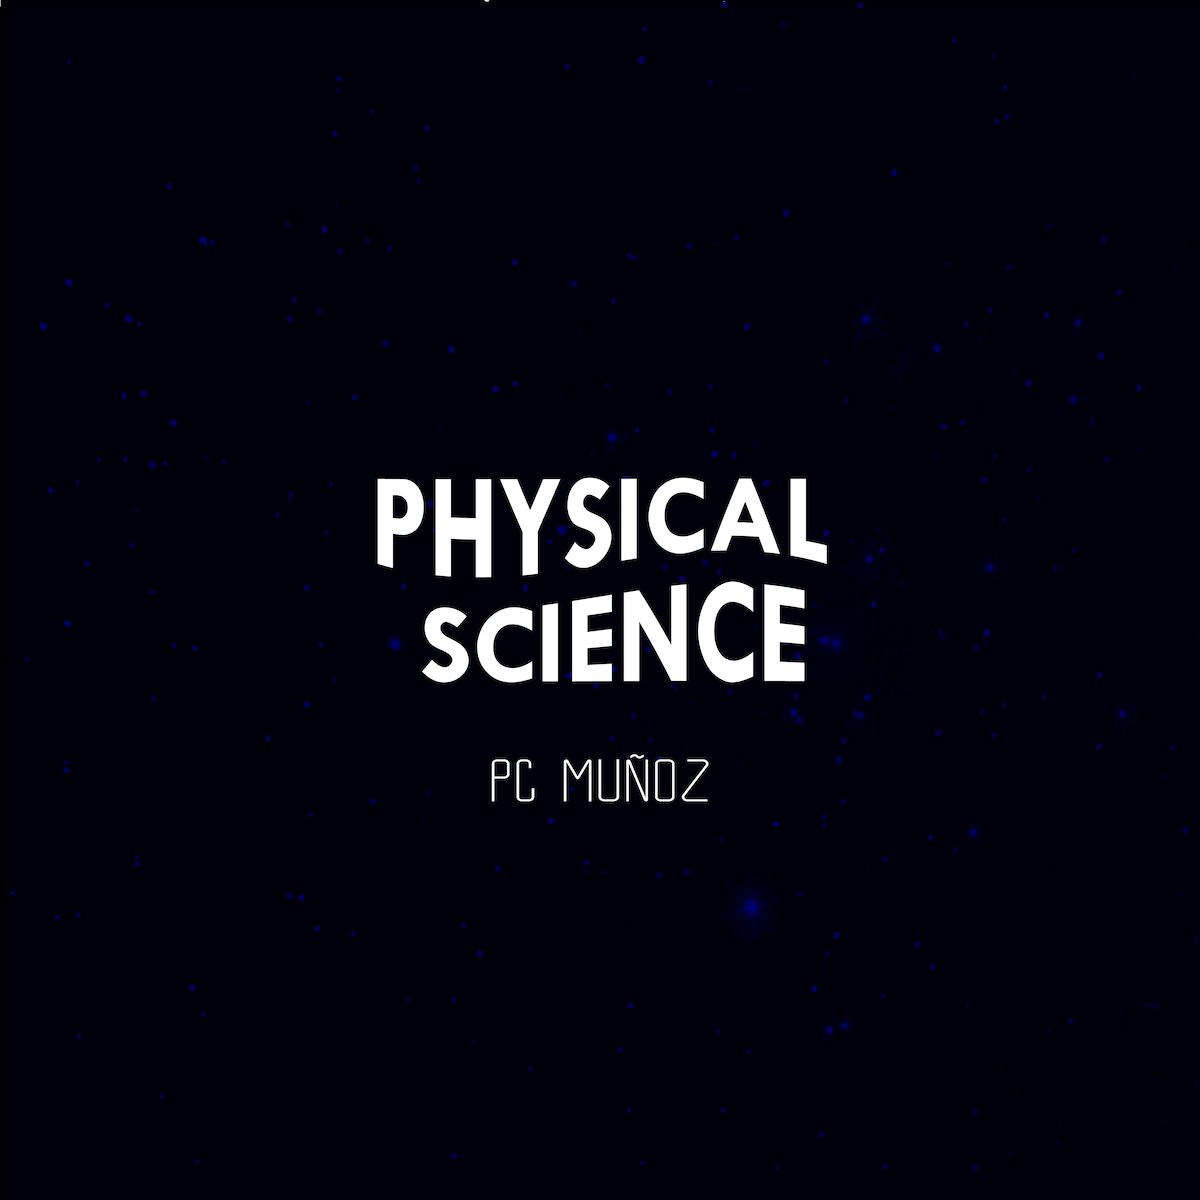 PC Munoz Physical Science album cover